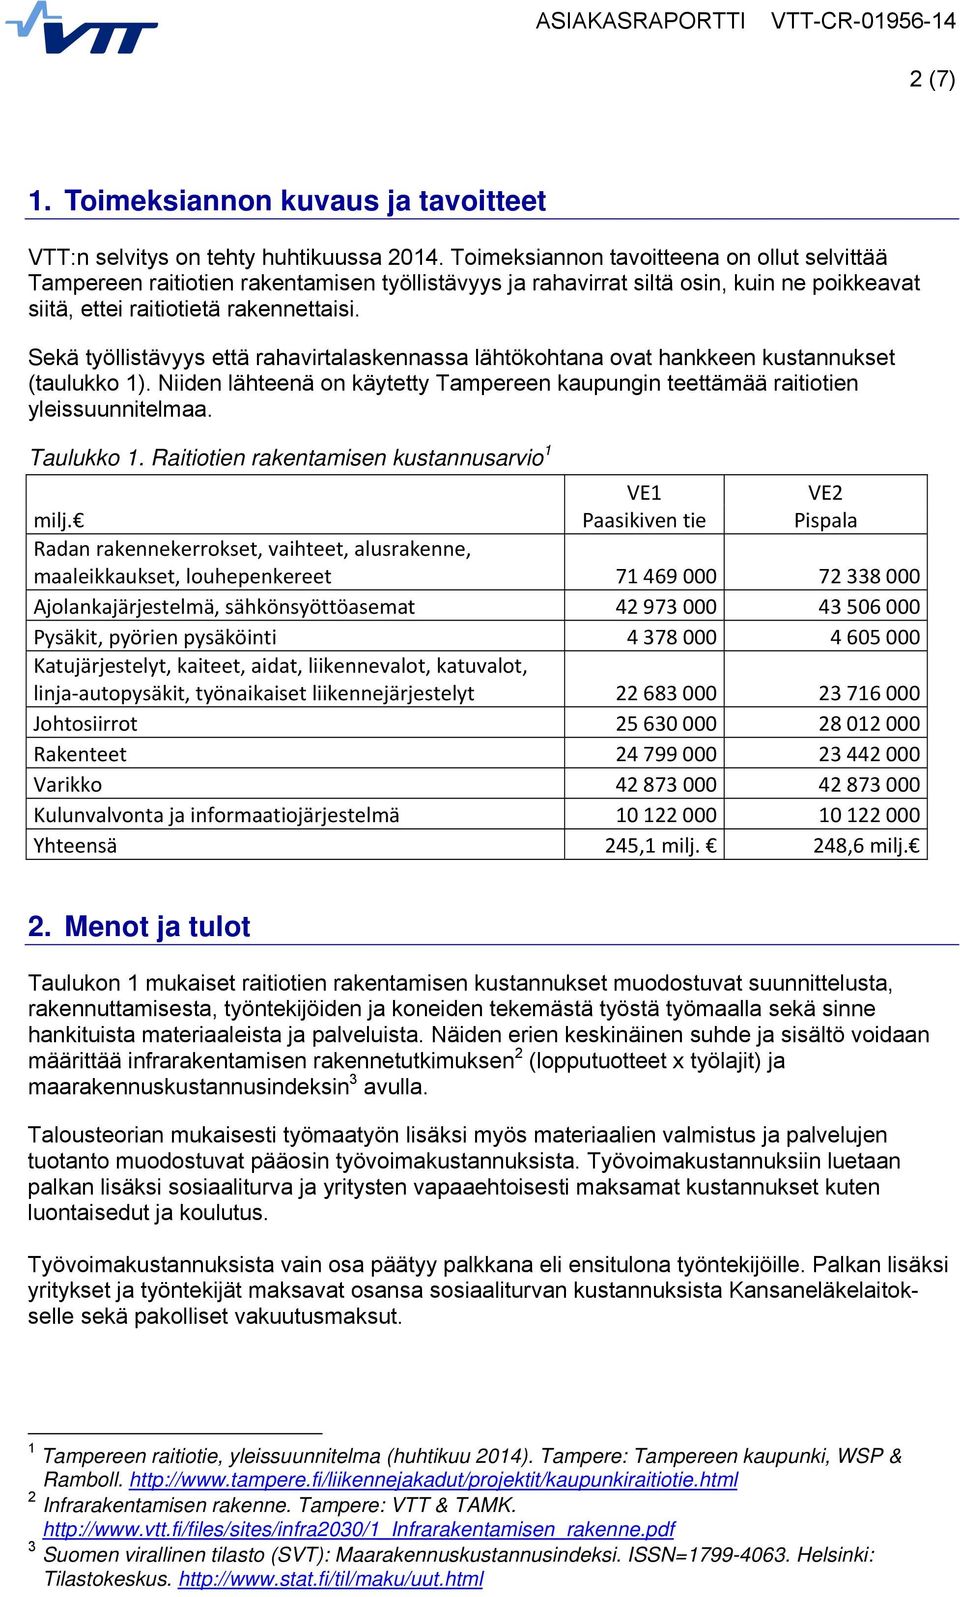 Sekä työllistävyys että rahavirtalaskennassa lähtökohtana ovat hankkeen kustannukset (taulukko 1). Niiden lähteenä on käytetty Tampereen kaupungin teettämää raitiotien yleissuunnitelmaa. Taulukko 1.